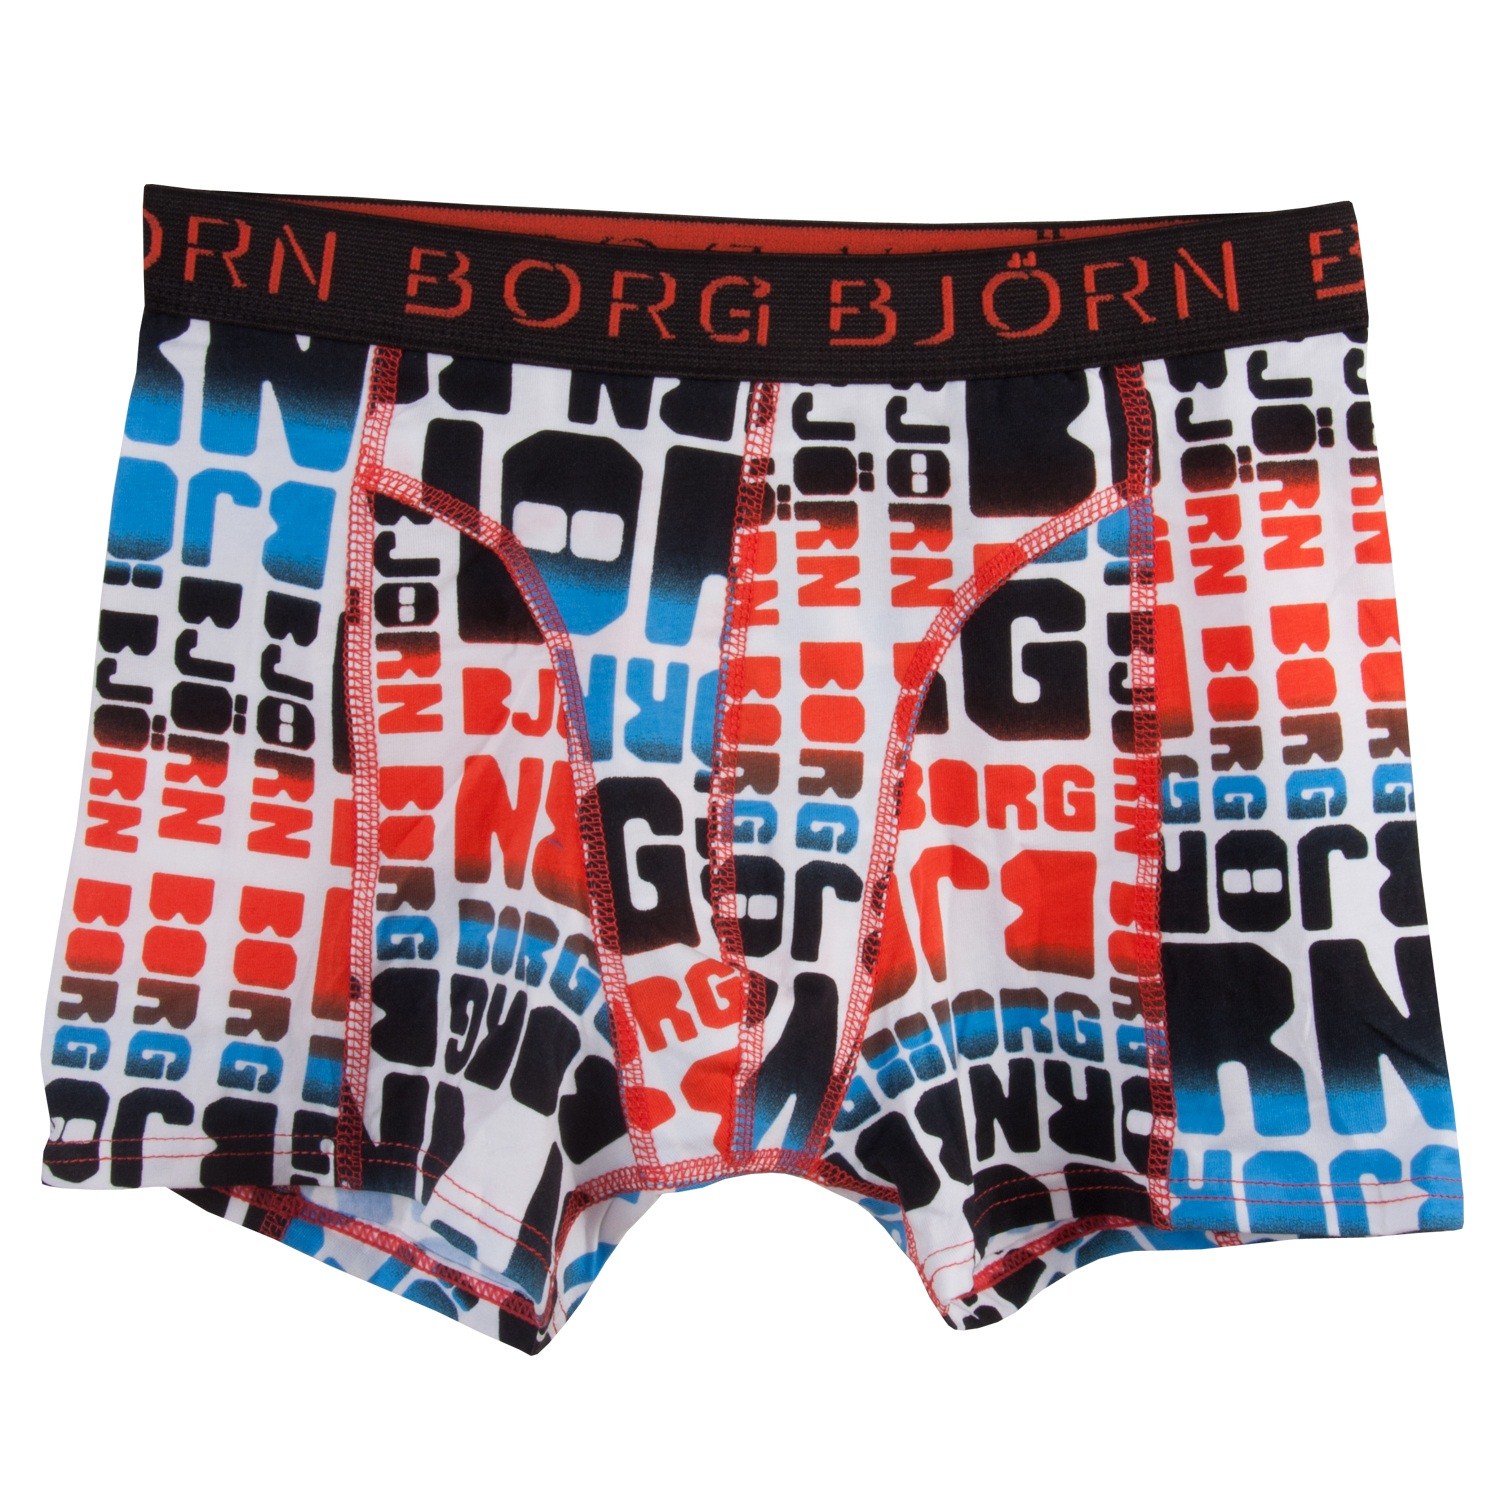 Björn Borg Shorts for Boys 11498